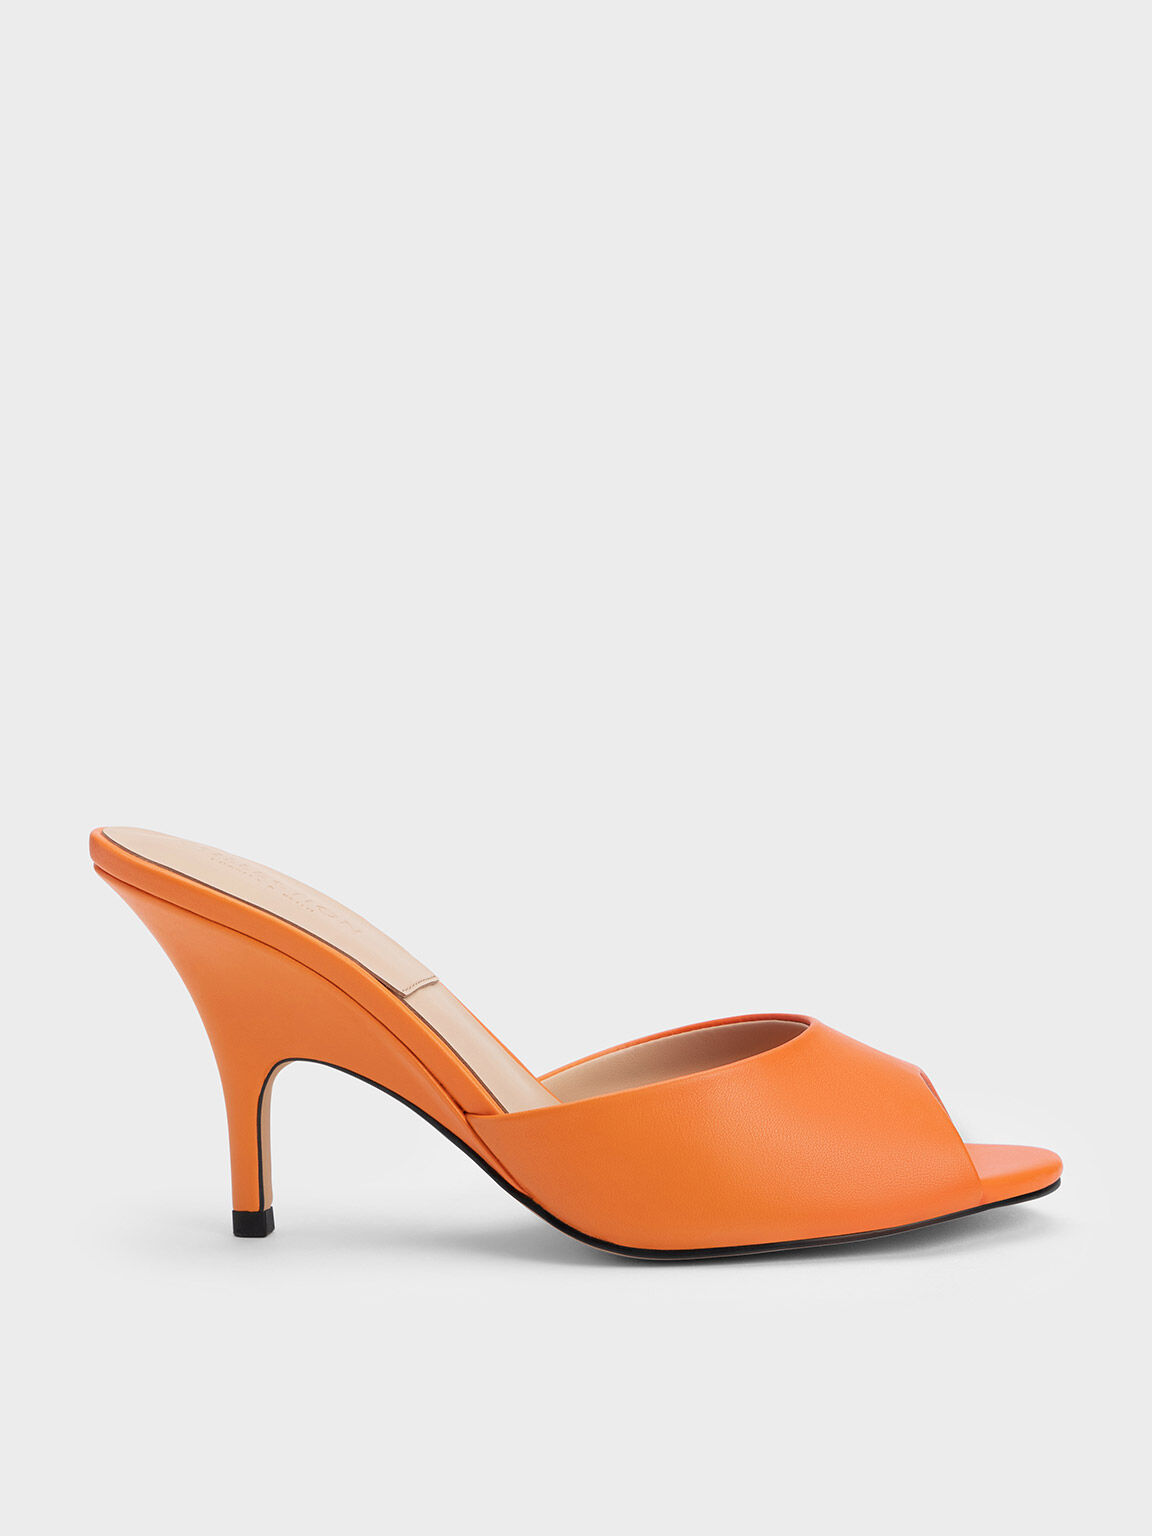 Amazon.com | Kino London Womens Stiletto High Heel Sandals Ladies Orange  Faux Suede Ankle Strap Platform Peeptoe Party Shoes (7, Orange Faux Suede,  numeric_7), BW-10 | Shoes